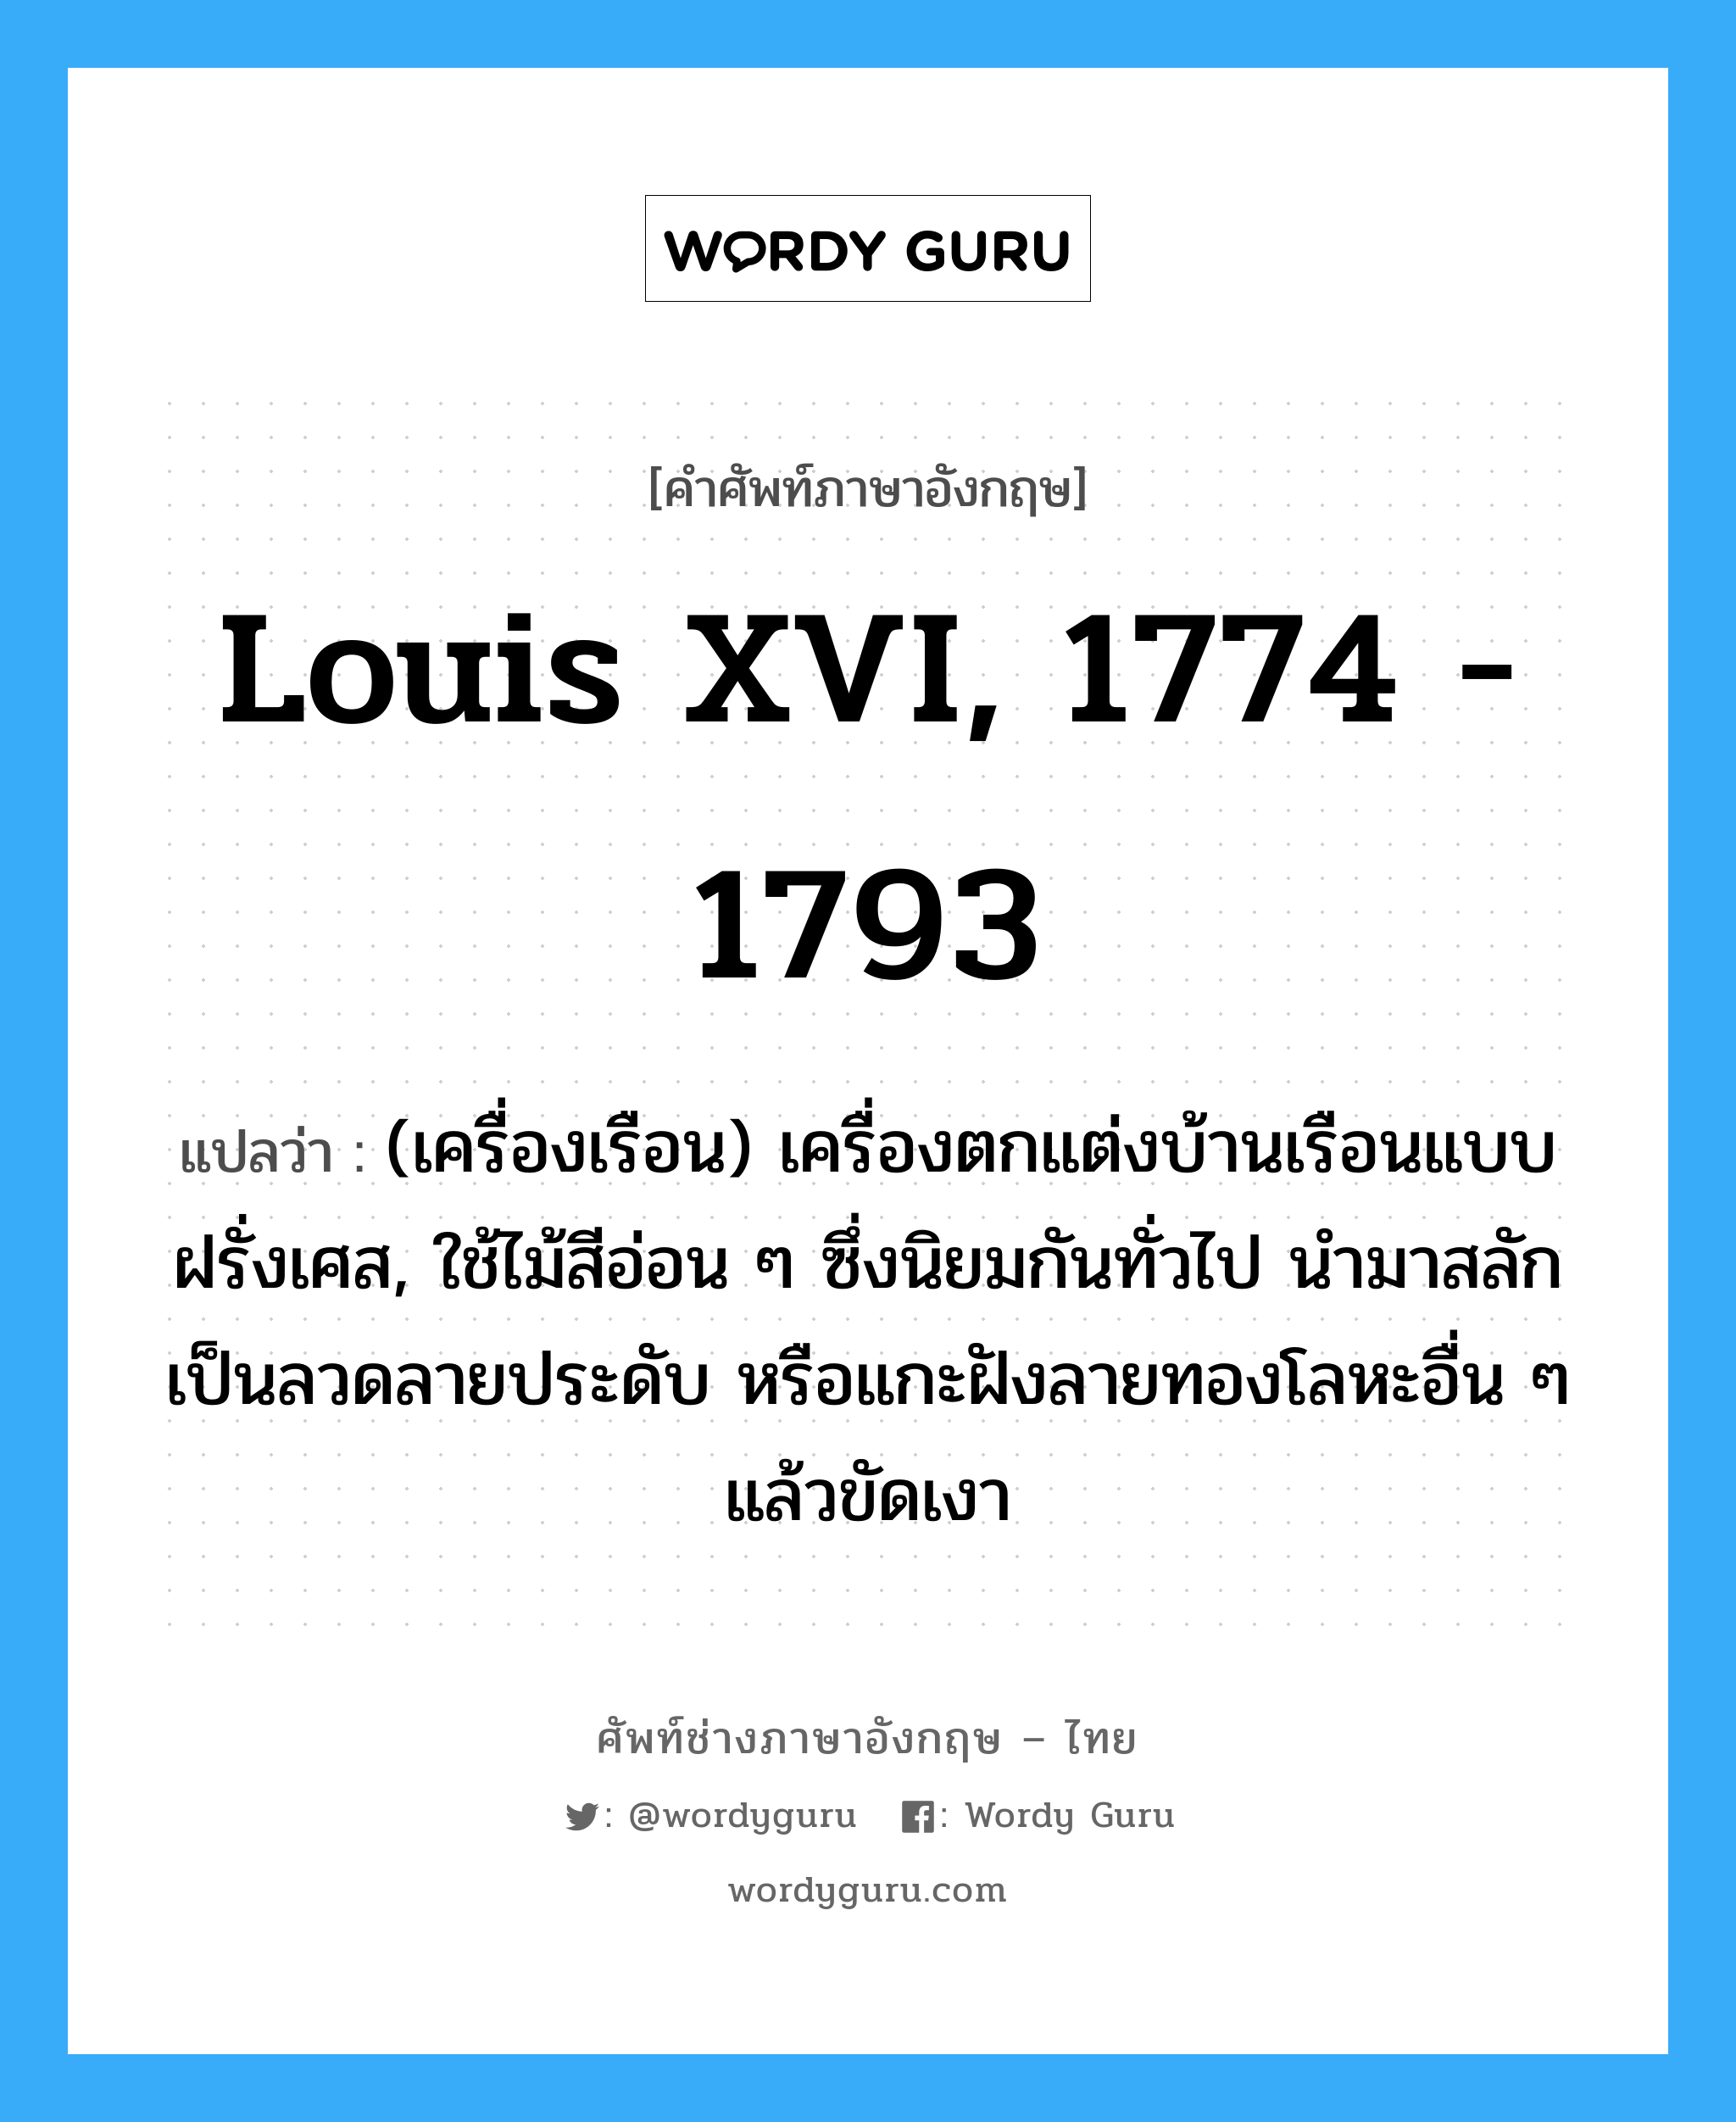 Louis XVI, 1774 - 1793 แปลว่า?, คำศัพท์ช่างภาษาอังกฤษ - ไทย Louis XVI, 1774 - 1793 คำศัพท์ภาษาอังกฤษ Louis XVI, 1774 - 1793 แปลว่า (เครื่องเรือน) เครื่องตกแต่งบ้านเรือนแบบฝรั่งเศส, ใช้ไม้สีอ่อน ๆ ซึ่งนิยมกันทั่วไป นำมาสลักเป็นลวดลายประดับ หรือแกะฝังลายทองโลหะอื่น ๆ แล้วขัดเงา